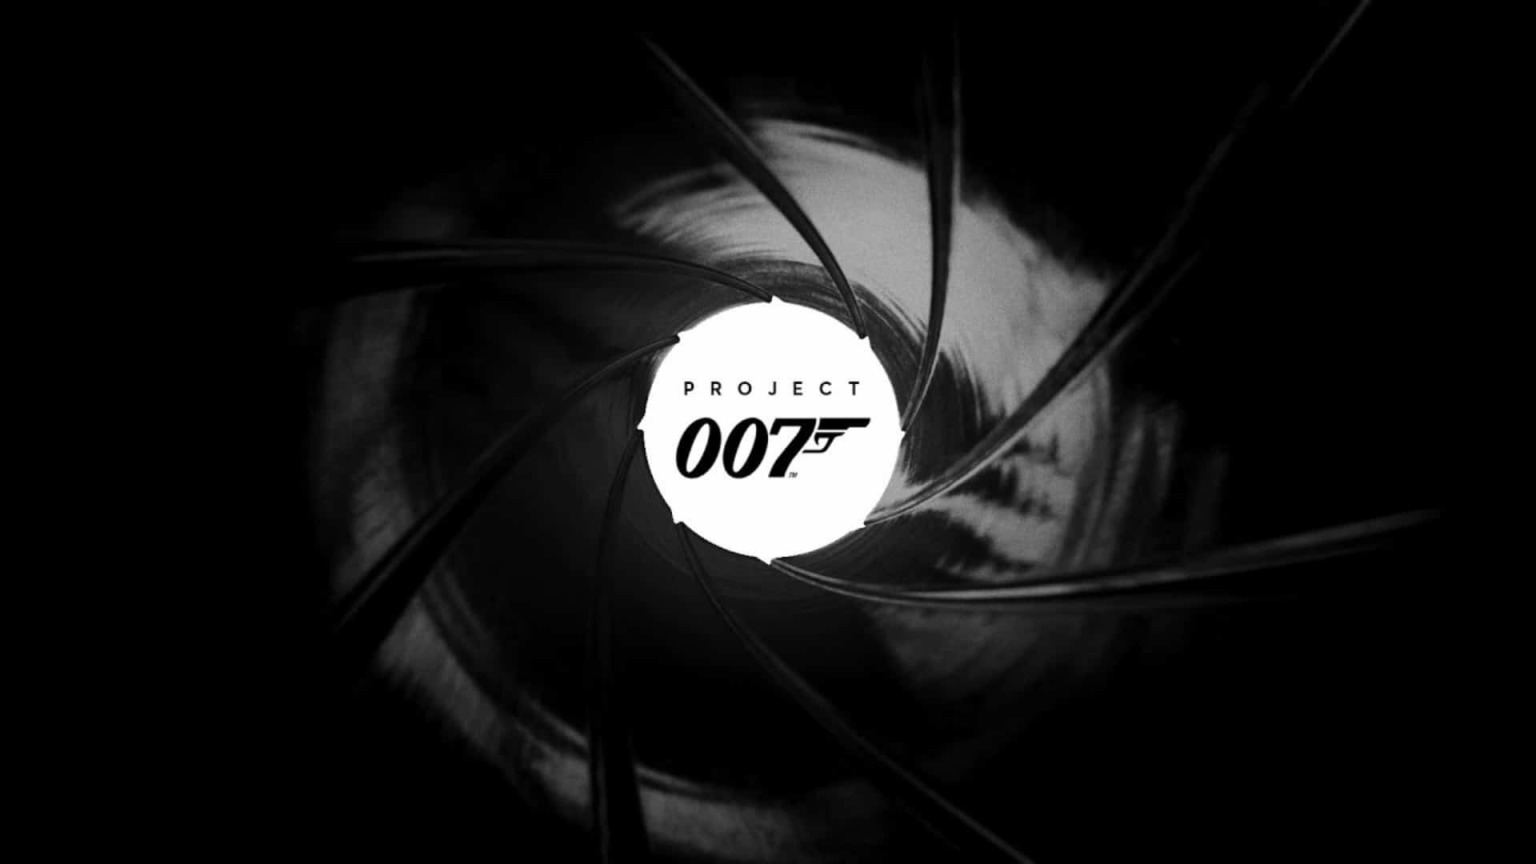 【PC遊戲】IO Interactive一心開發007遊戲 拒絕多個IP合作提議